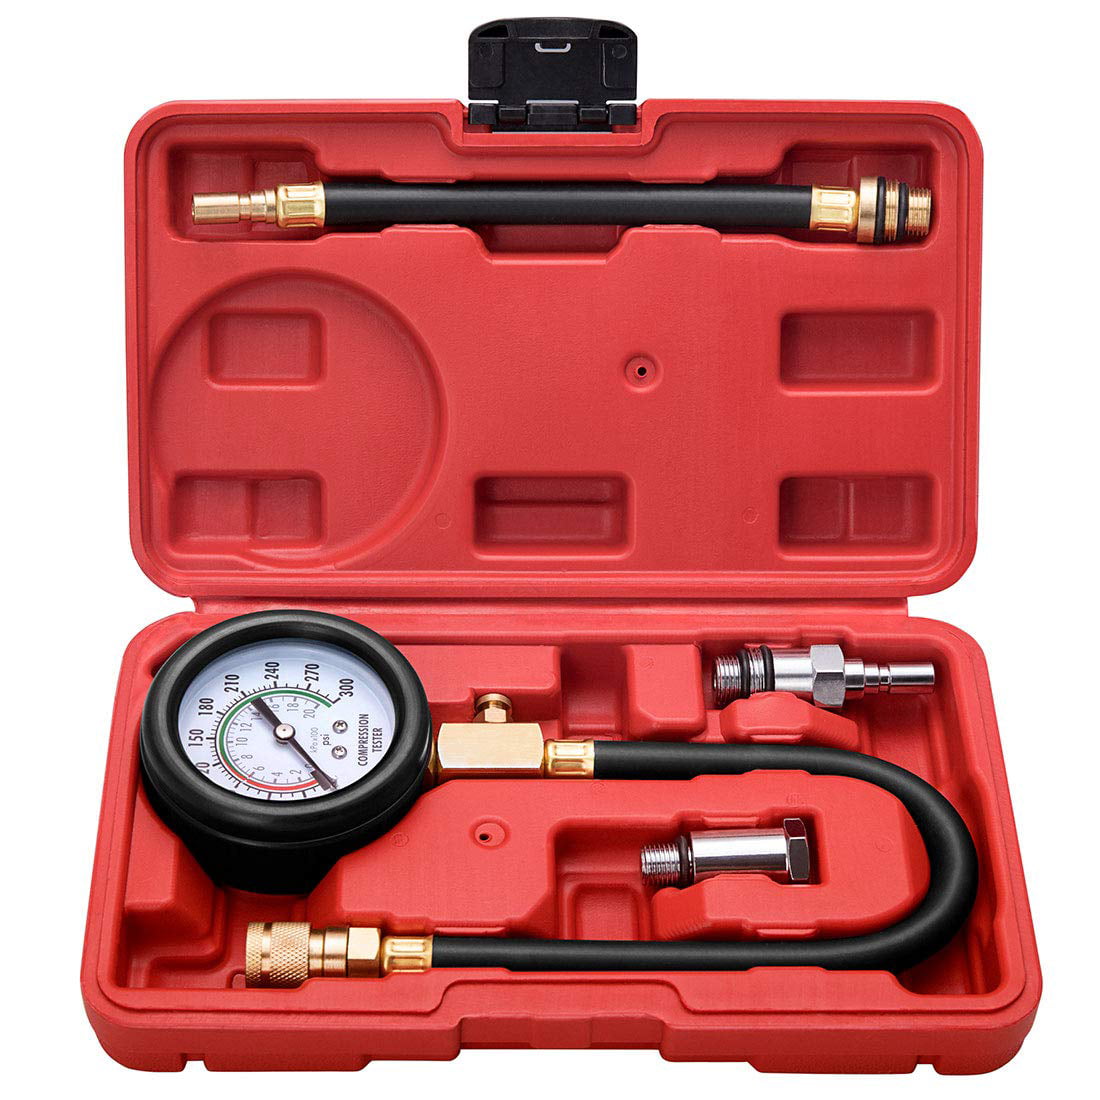 Pro Petrol Gas Auto Engine Cylinder Compression Diagnostic Tester Gauge Kit